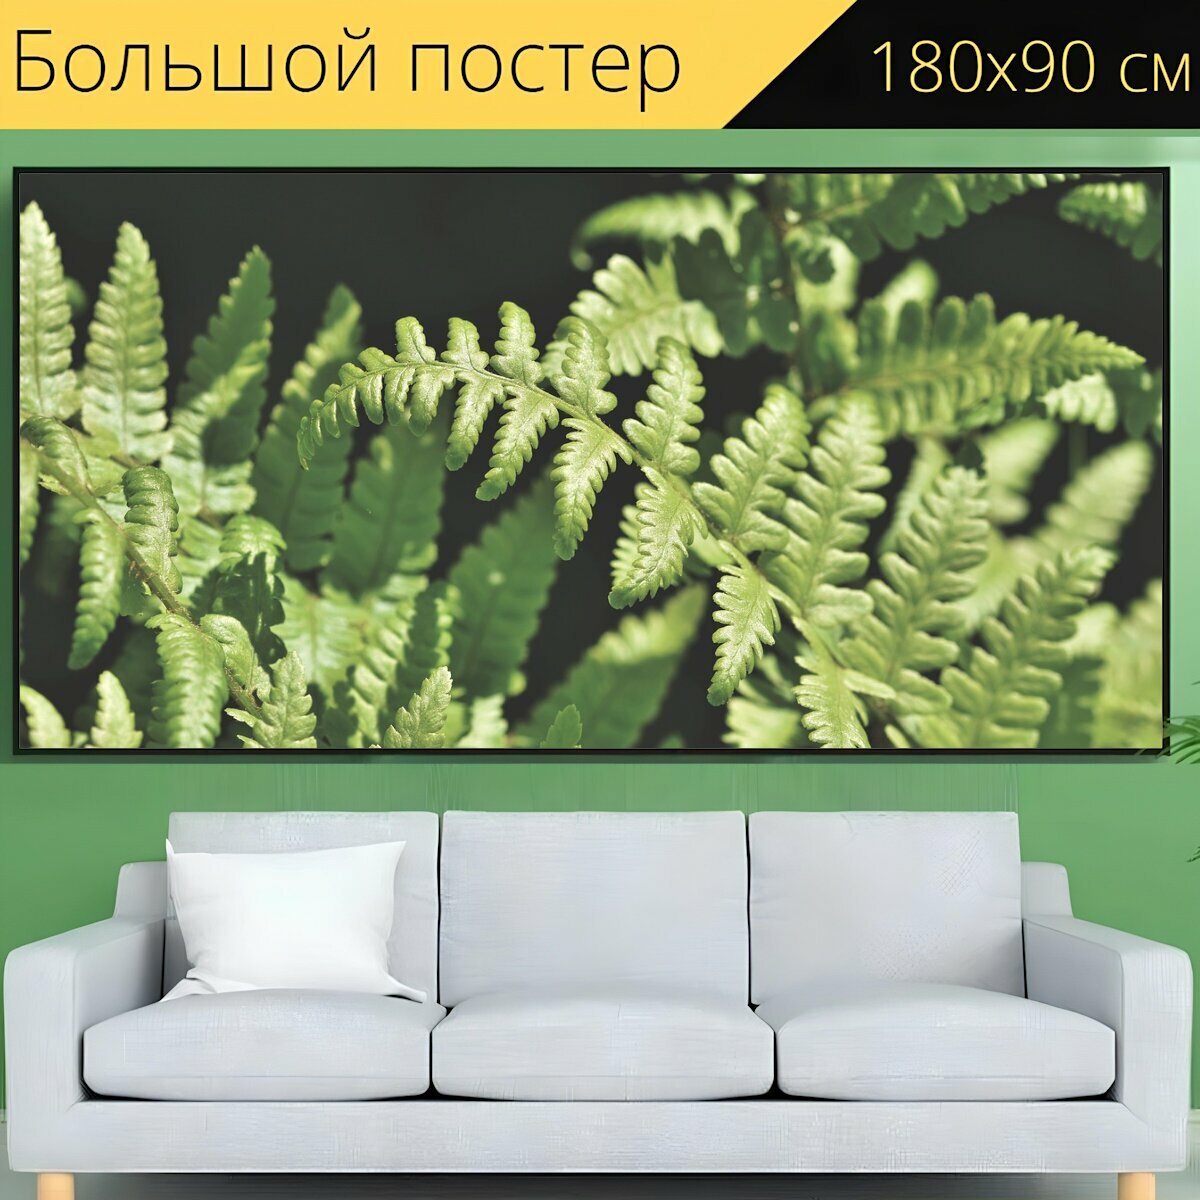 Большой постер "Папоротник, листья папоротника, растение папоротник" 180 x 90 см. для интерьера